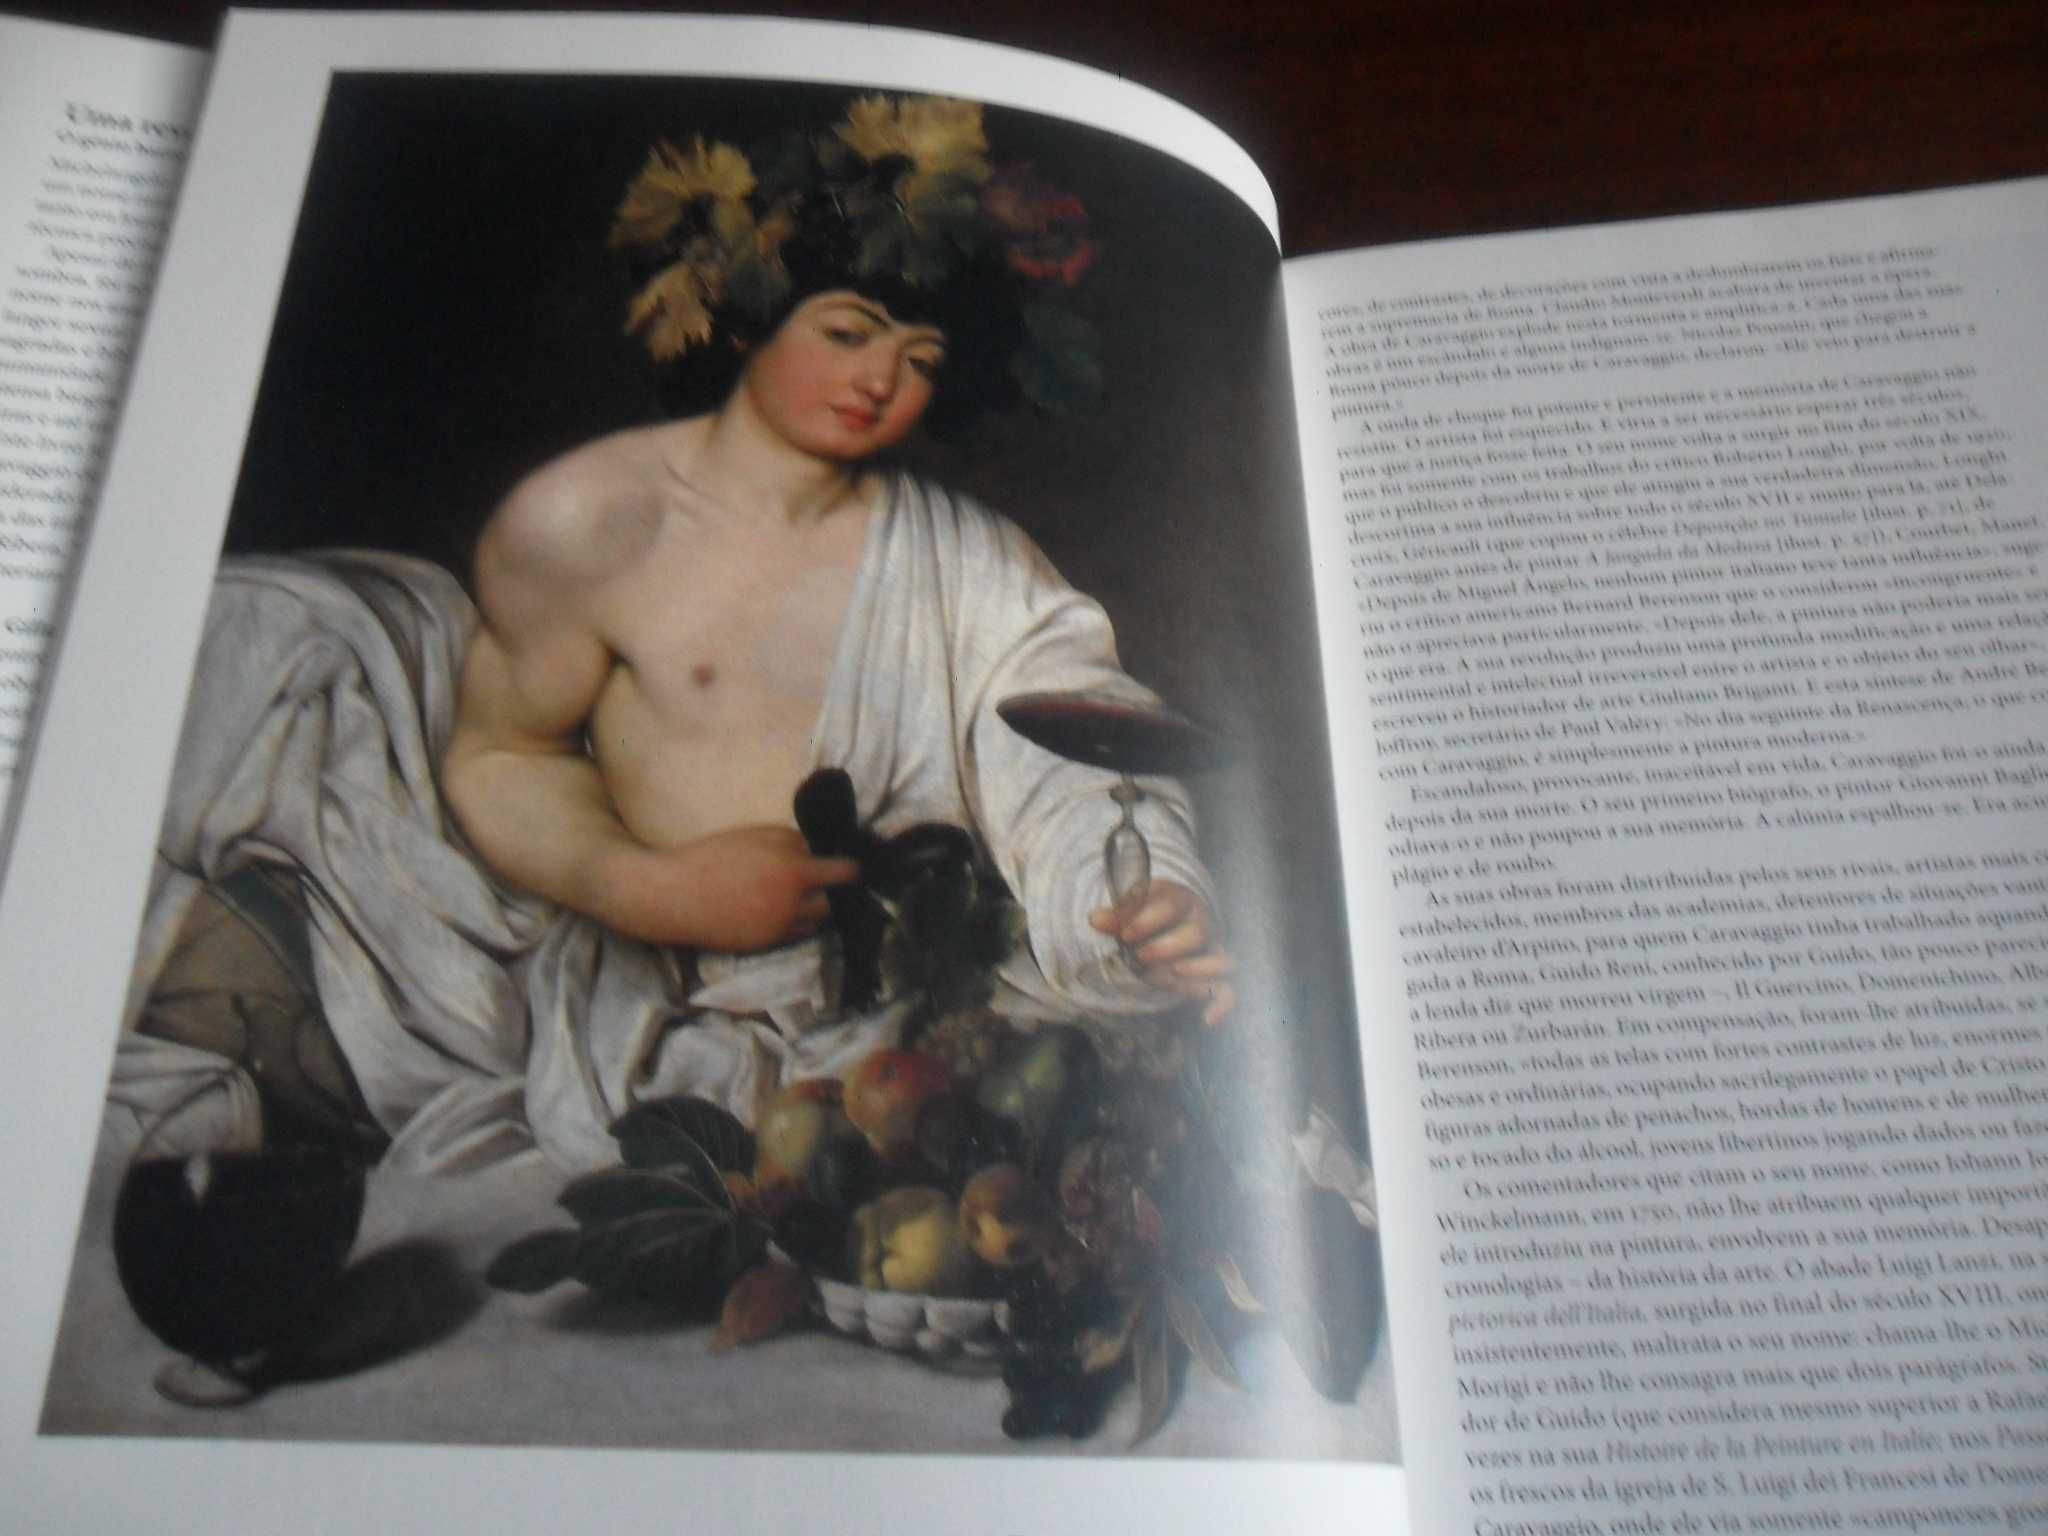 "Caravaggio" de Gilles Lambert - Edição de 2015